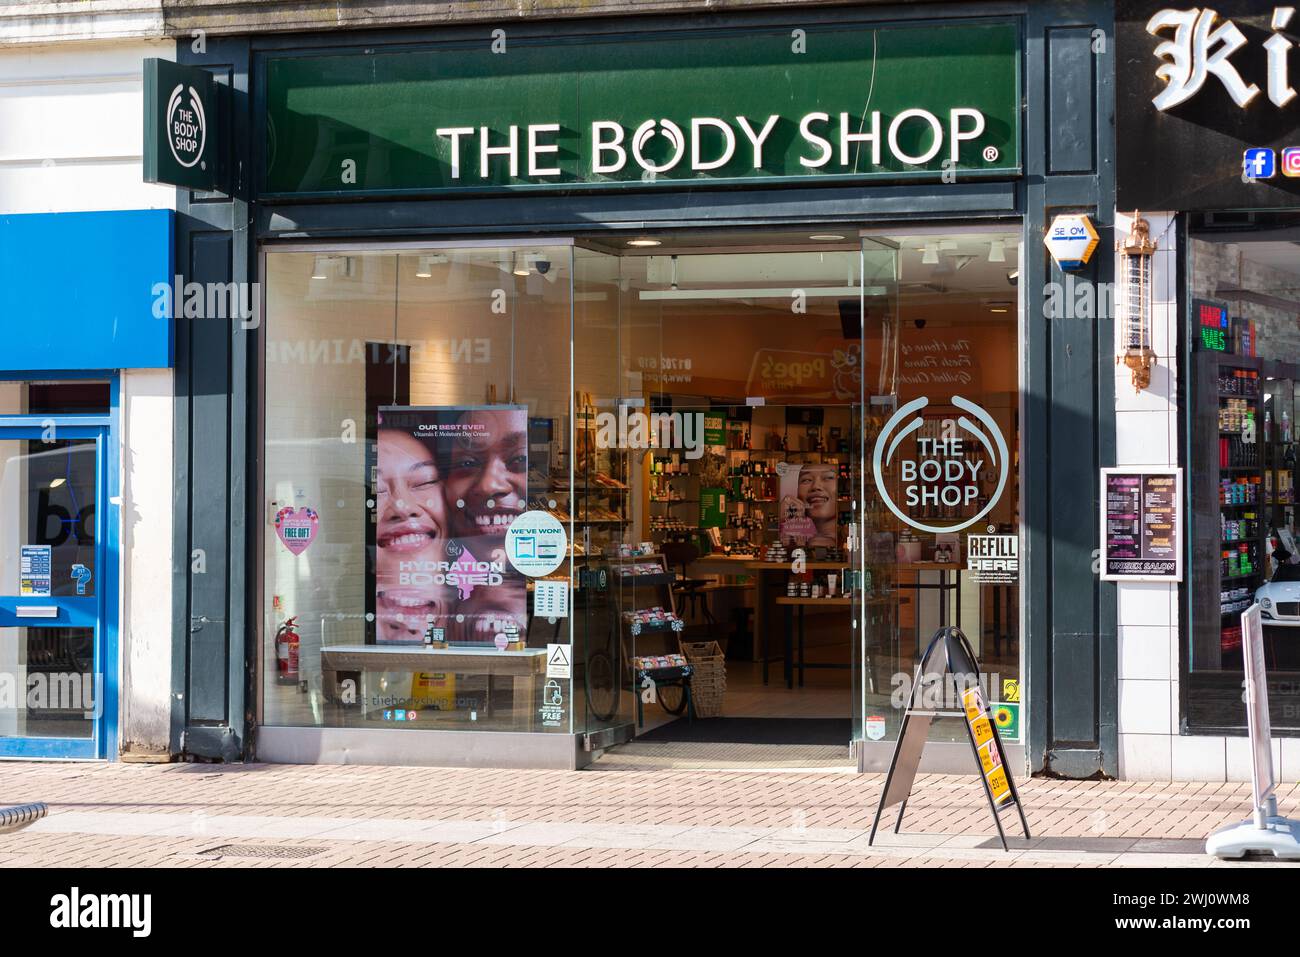 High Street, Southend on Sea, Essex, Regno Unito. 12 febbraio 2024. La Body Shop, un'azienda britannica di cosmetici, prodotti per la cura della pelle e profumi, è destinata a nominare amministratori questa settimana, in una mossa che potrebbe comportare la chiusura di negozi e la perdita di posti di lavoro. Aurelius ha acquisito l'attività a novembre per una somma quotata di 207 milioni di sterline, ma le vendite nel periodo natalizio sono scese al di sotto degli obiettivi prefissati e i nuovi proprietari hanno riferito che l'azienda opera con capitale circolante insufficiente Foto Stock